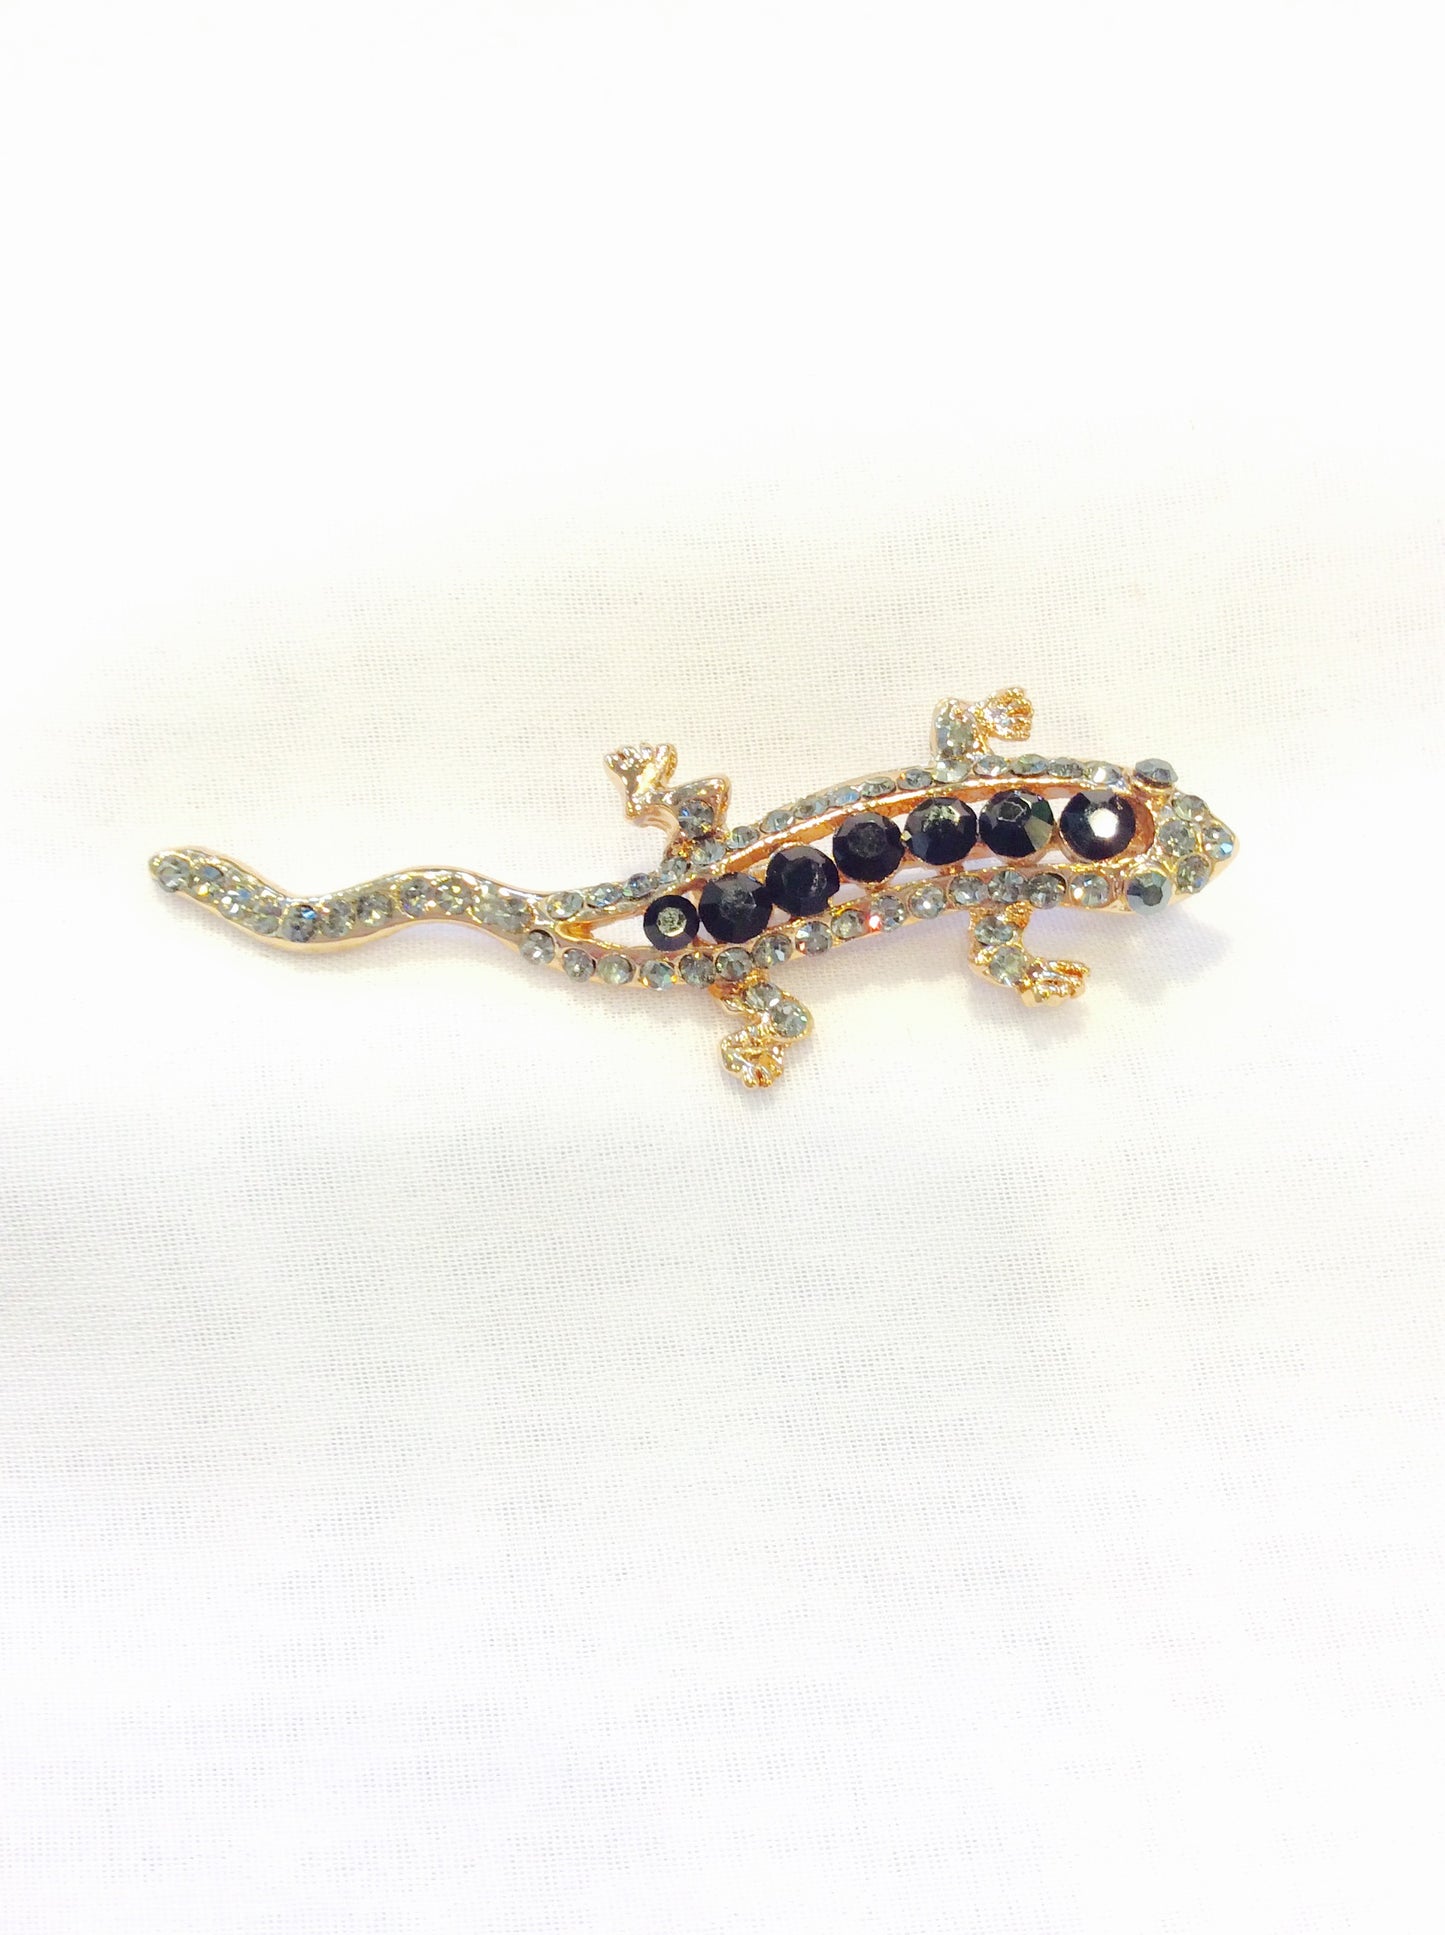 Small Reptile(Lizard) Pin#66-28058JT